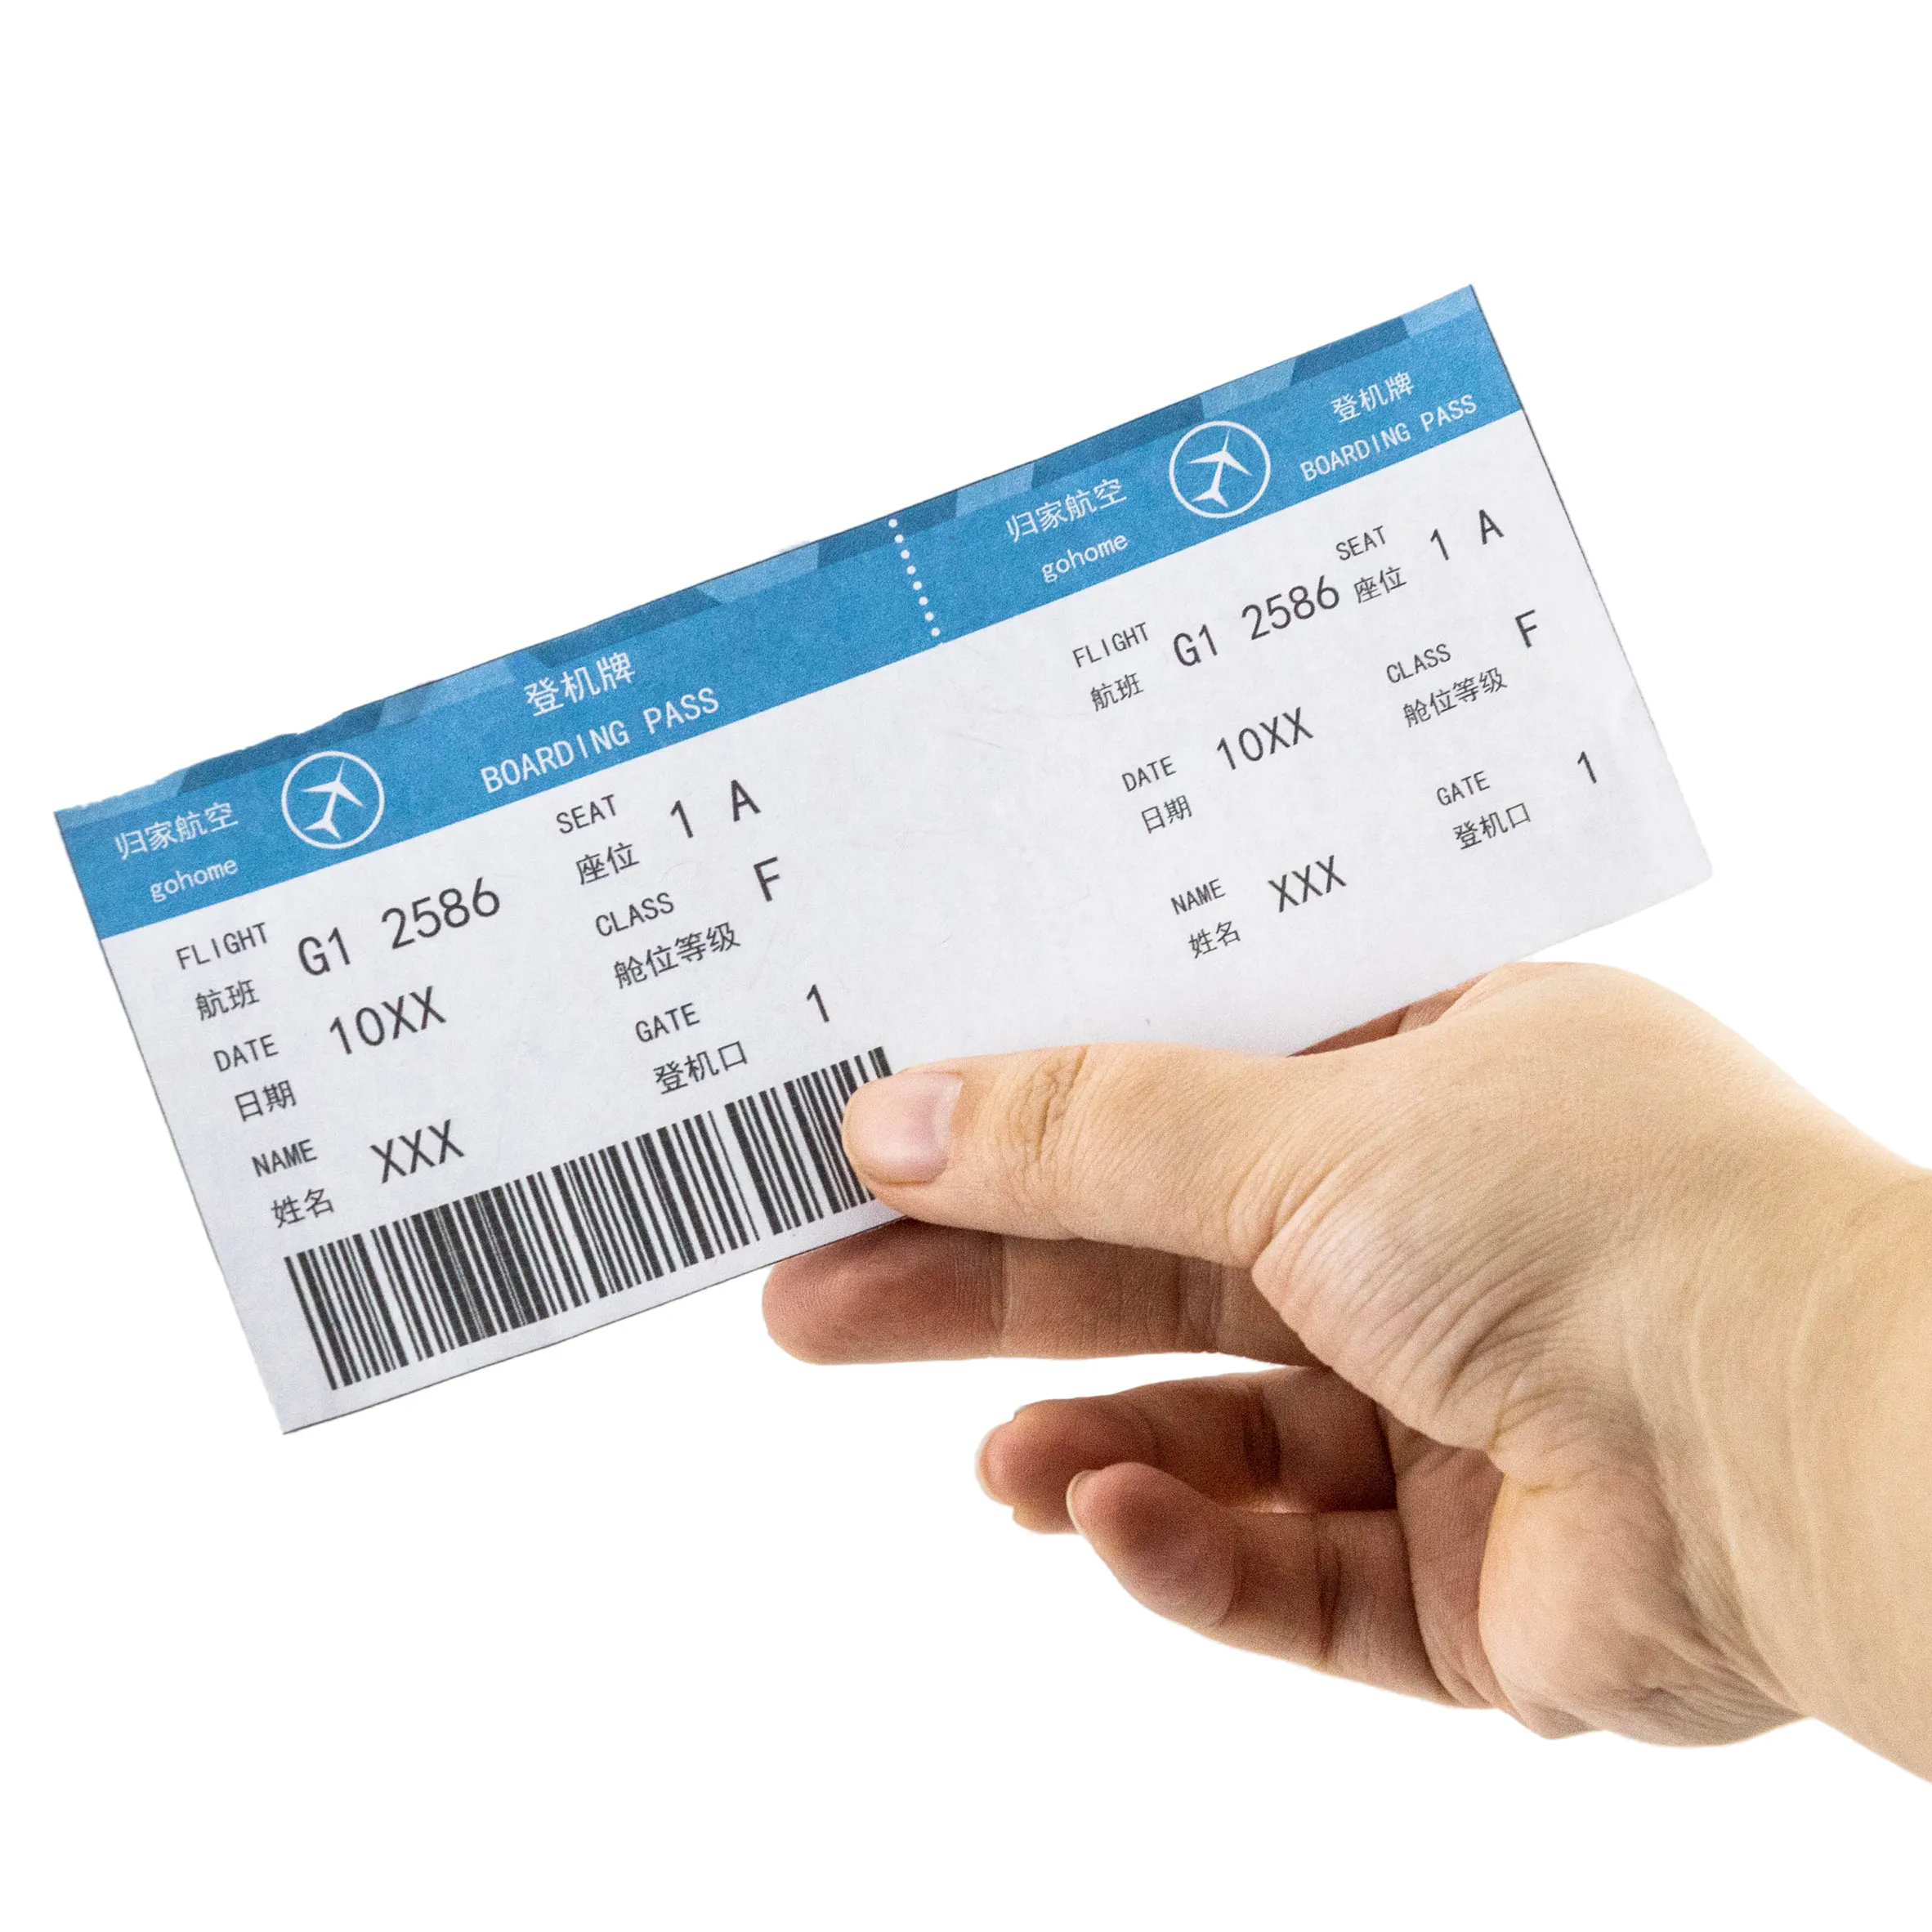 बुकिंग सस्ते उड़ान एयरलाइन टिकट थर्मल कागज बोर्डिंग पास एयर शिल्प टिकट